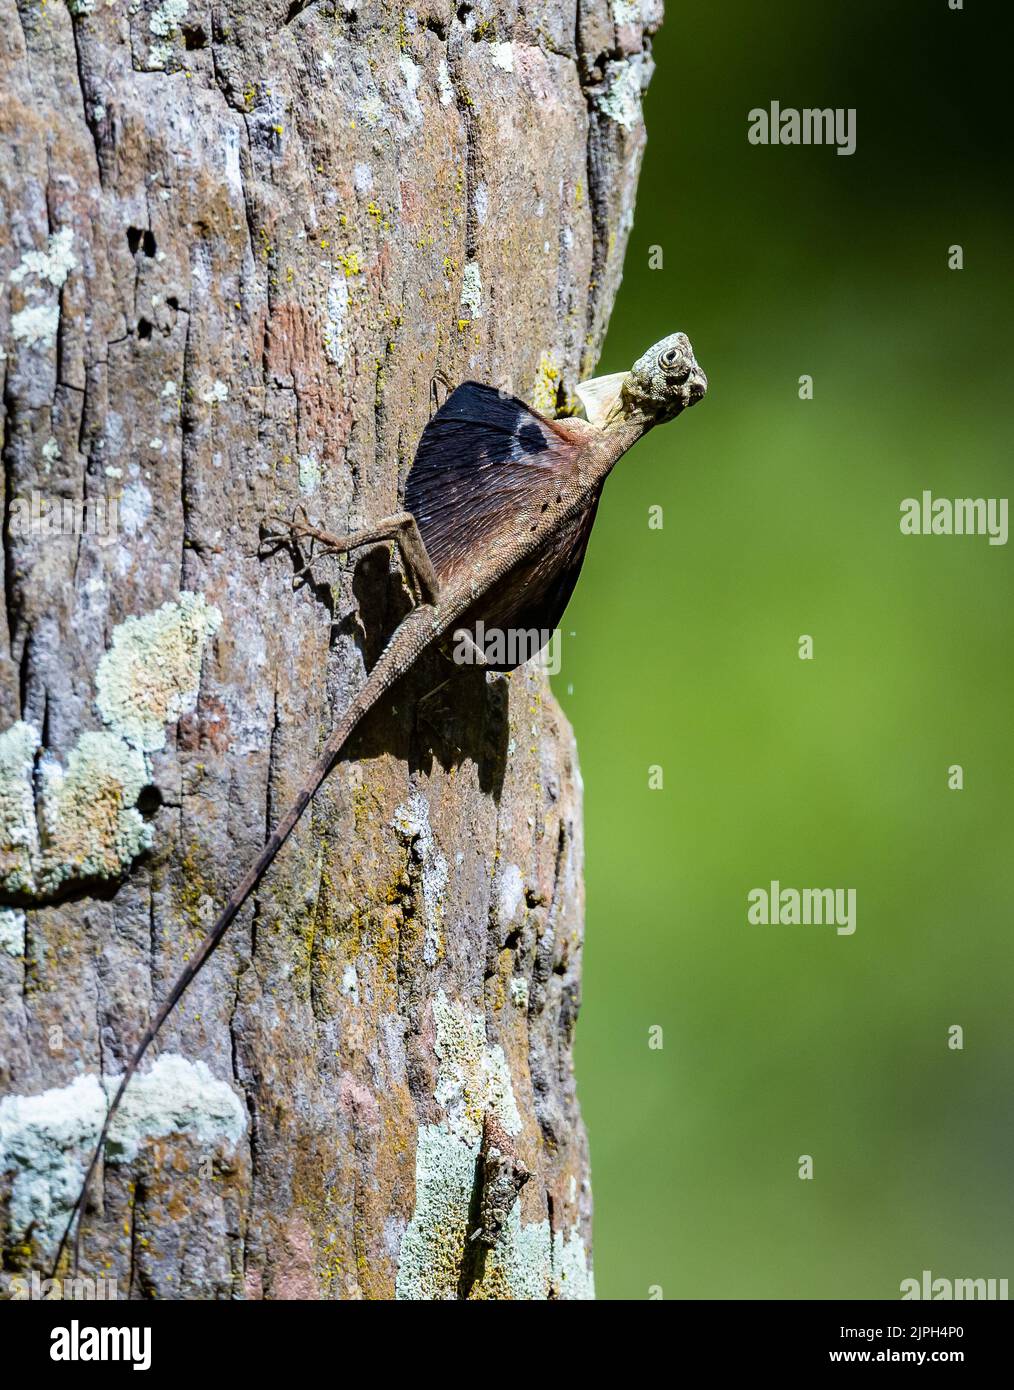 Eine gleitende Eidechse (Draco sp.) auf einem Baumstamm. Makassar, Süd-Sulawesi, Indonesien. Stockfoto